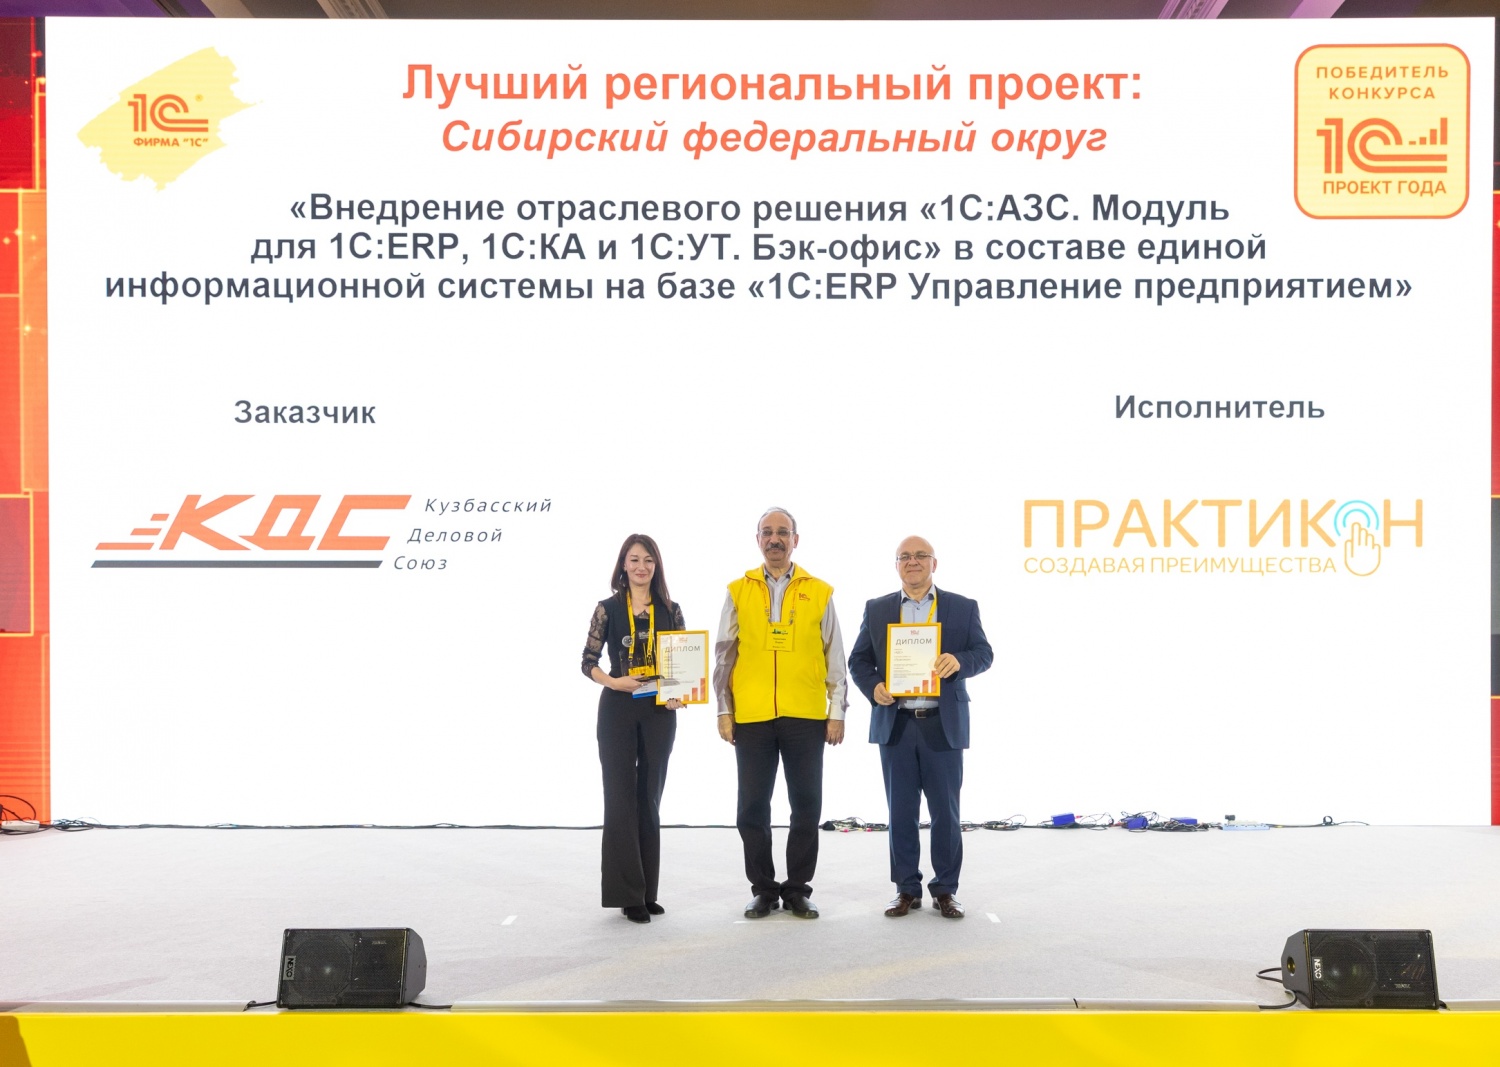 Компании «Практикон» вручена награда конкурса «1С:Проект года»